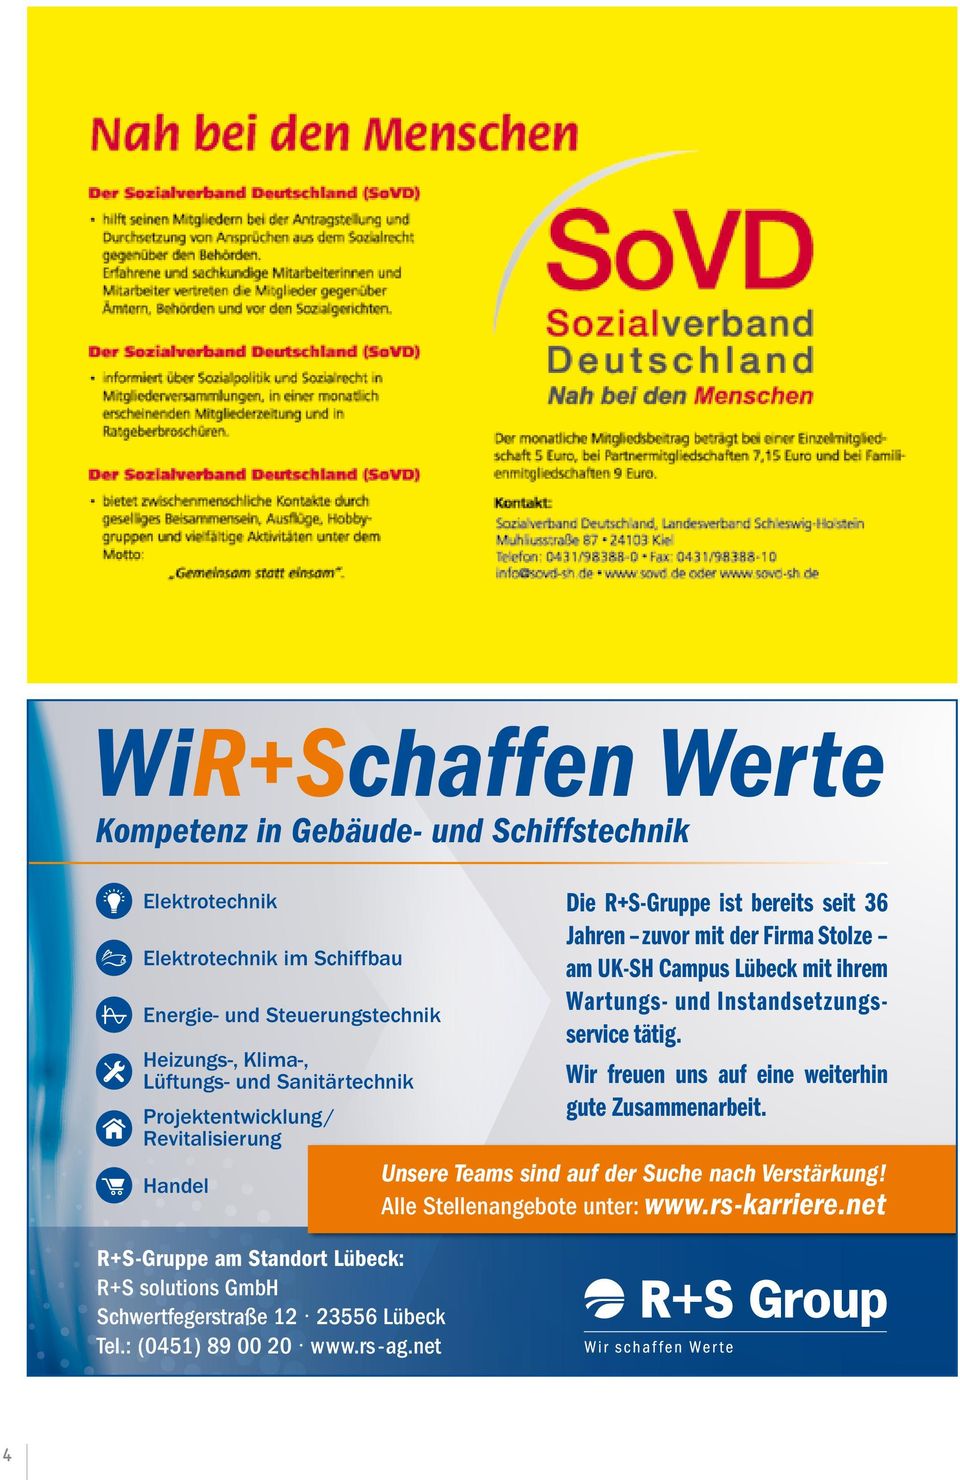 rs-karriere.net R+S-Gruppe am Standort Lübeck: R+S solutions GmbH Schwertfegerstraße 12 23556 Lübeck Tel.: (0451) 89 00 20 www.rs -ag.